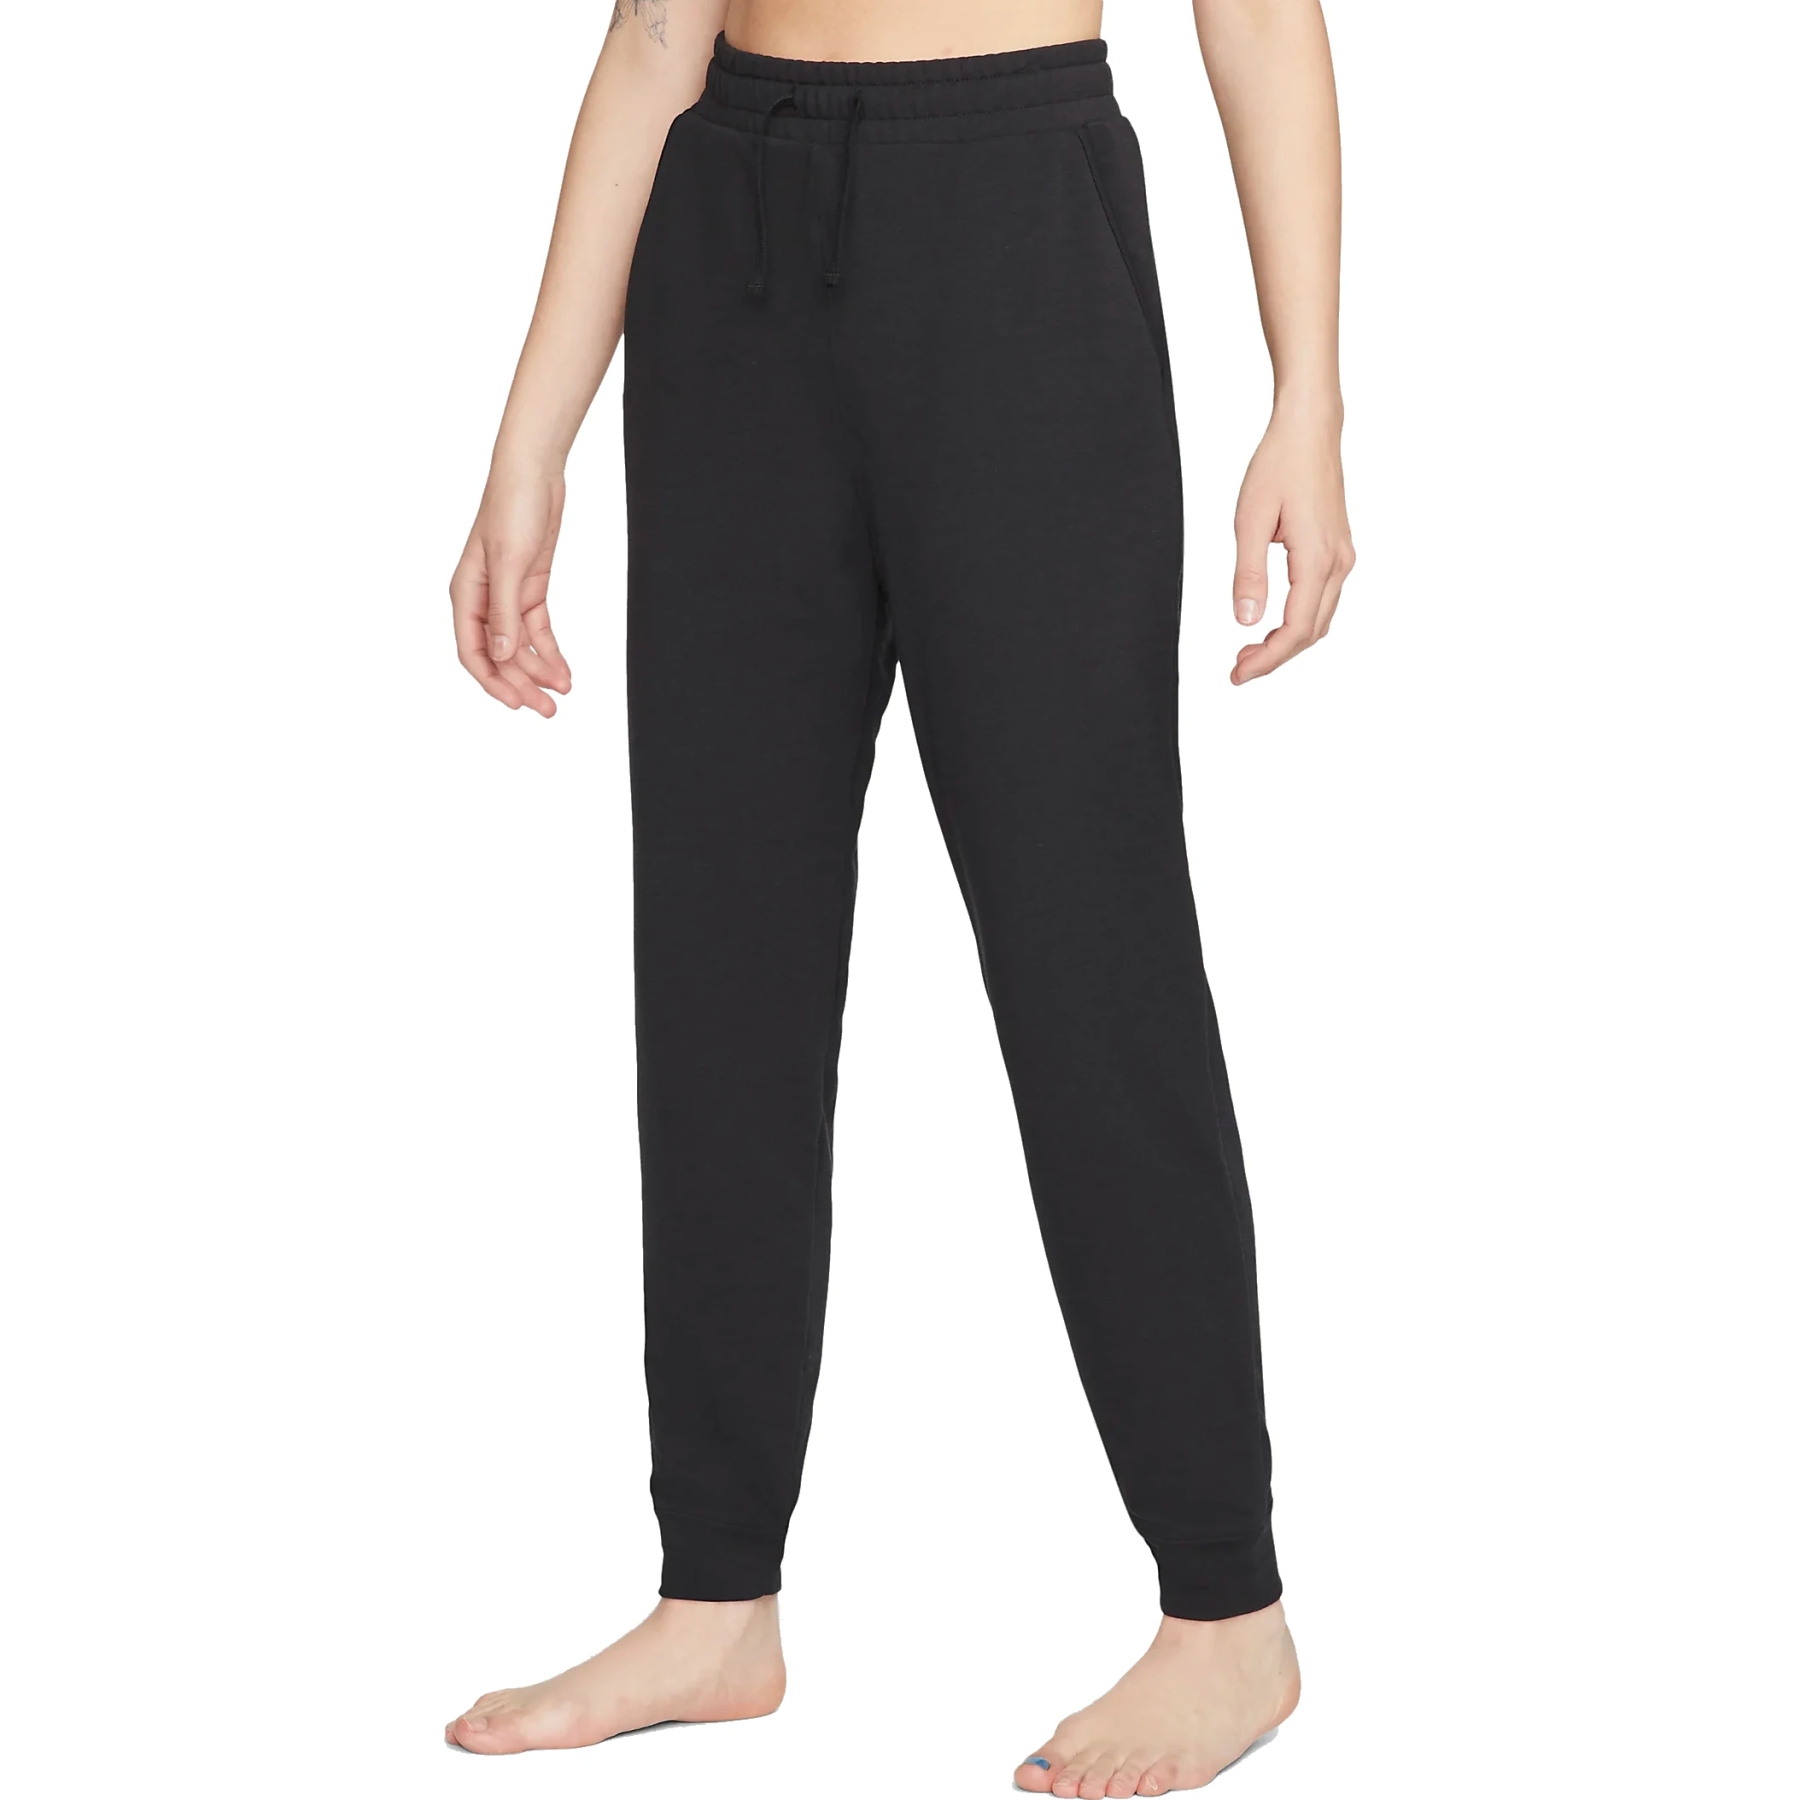 Produktbild von Nike Yoga Dri-FIT 7/8-Fleece-Jogger für Damen - black/iron grey DM7037-010